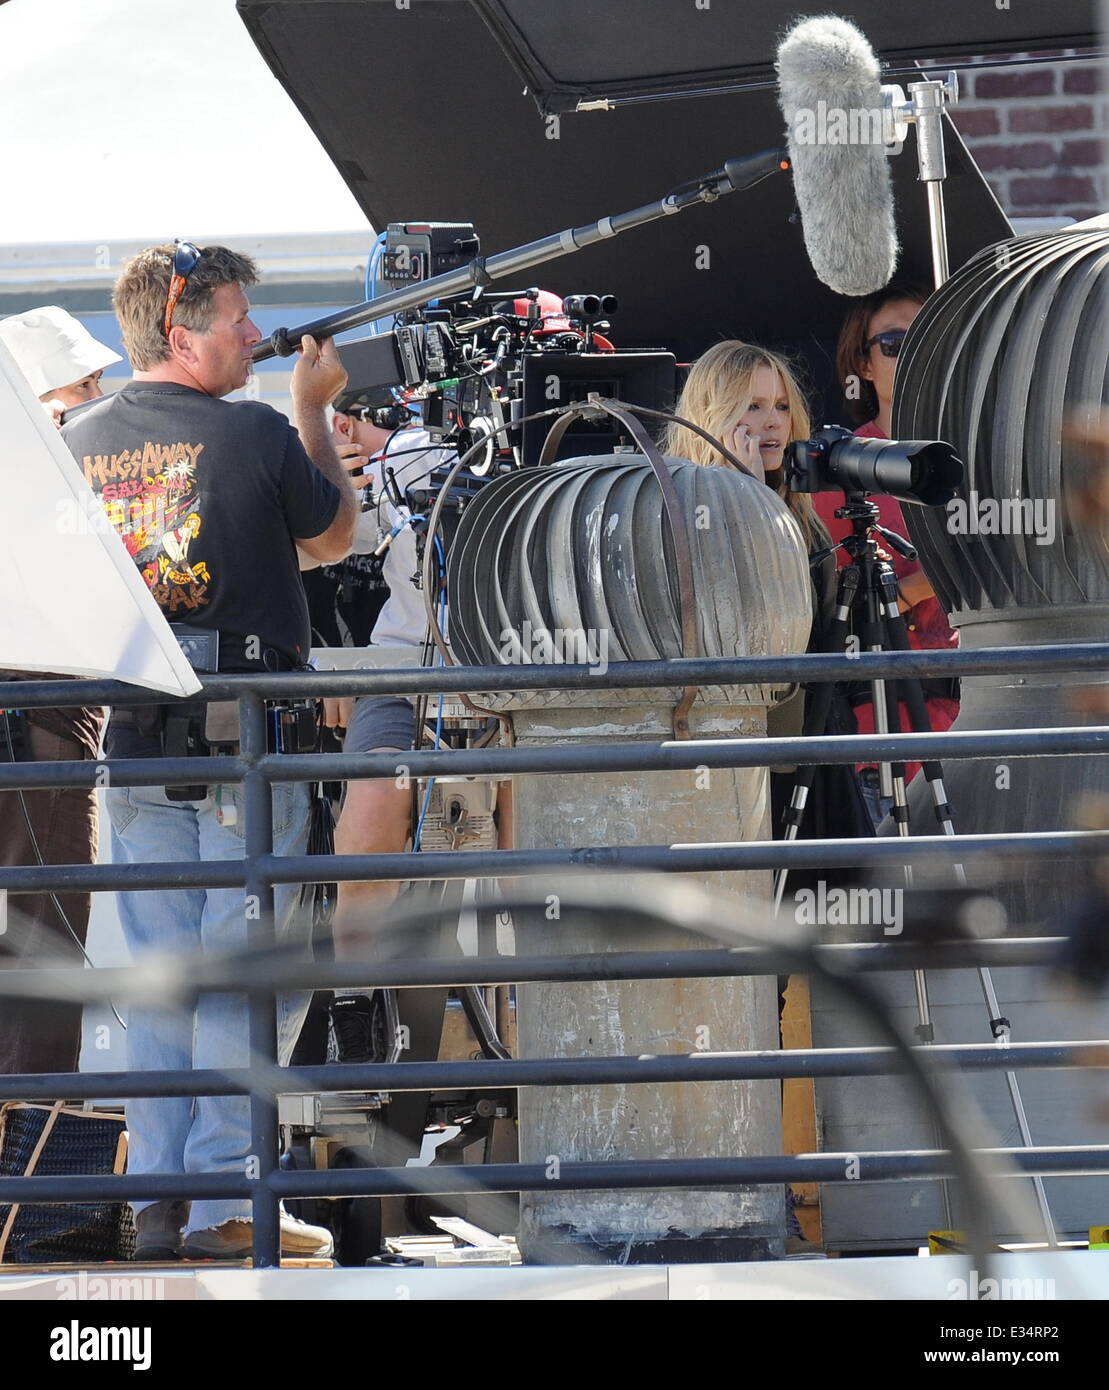 Schauspielerin Kristen Bell spielt Paparazzi für einen Tag, da sie jemand für eine Szene auf dem neuesten kommenden Spielfilm von "Veronica Mars" in der Innenstadt von Los Angeles ausspioniert.  Mitwirkende: Kristen Bell wo: Los Angeles, California, Vereinigte Staaten von Amerika bei: 19. Juni 2013 Stockfoto